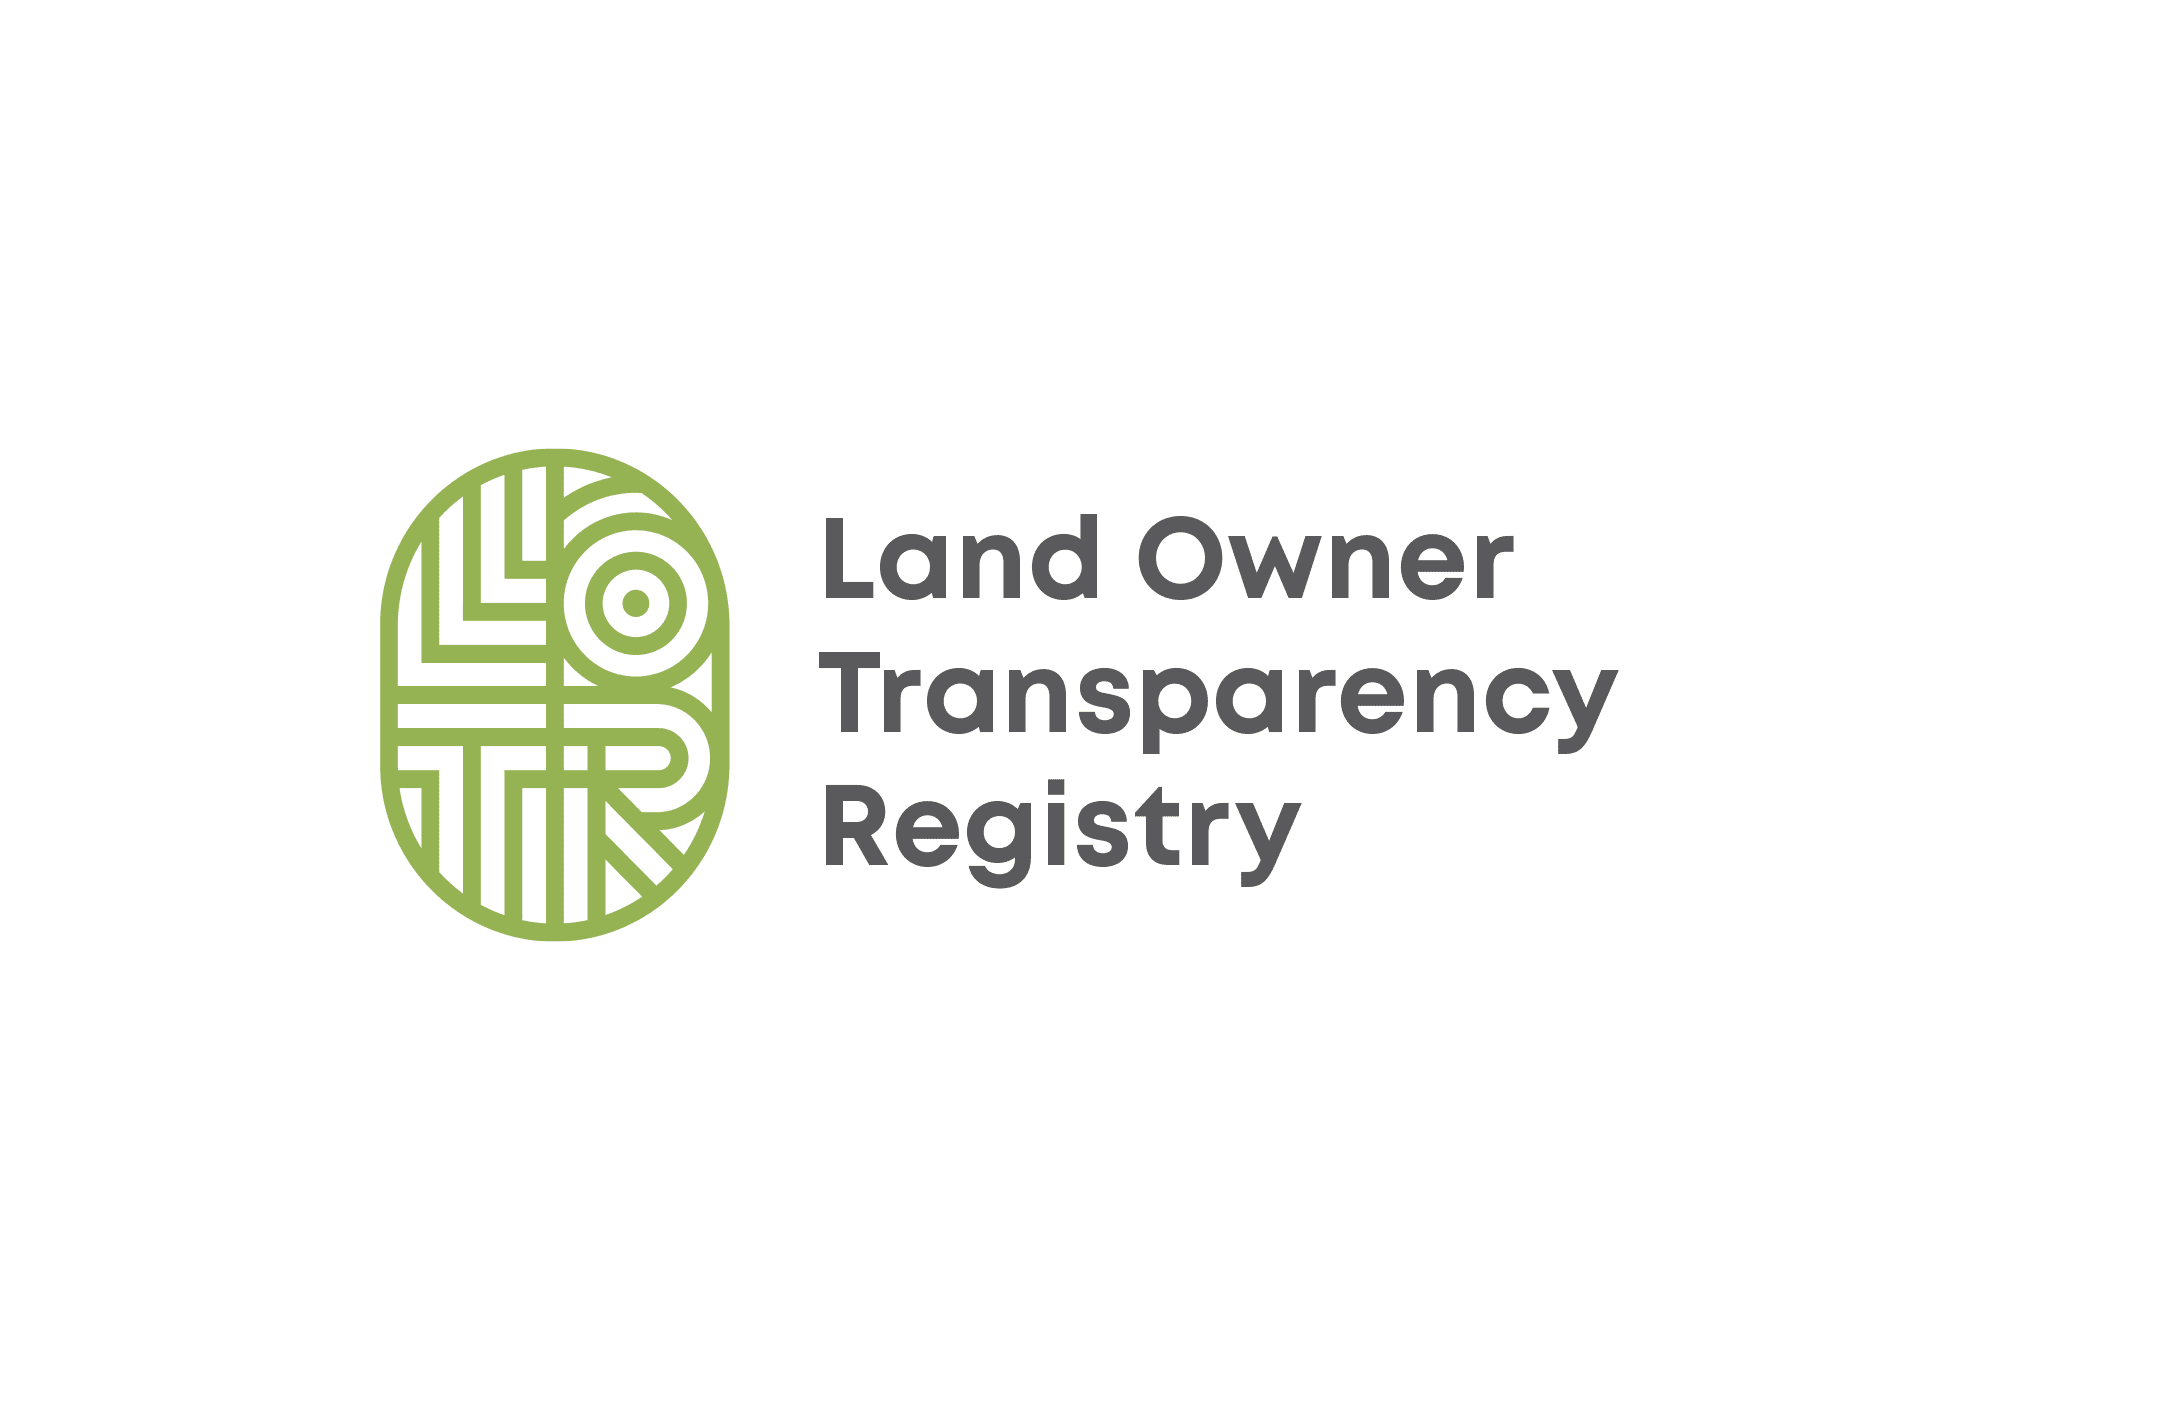 Land Owner Transparency Registry